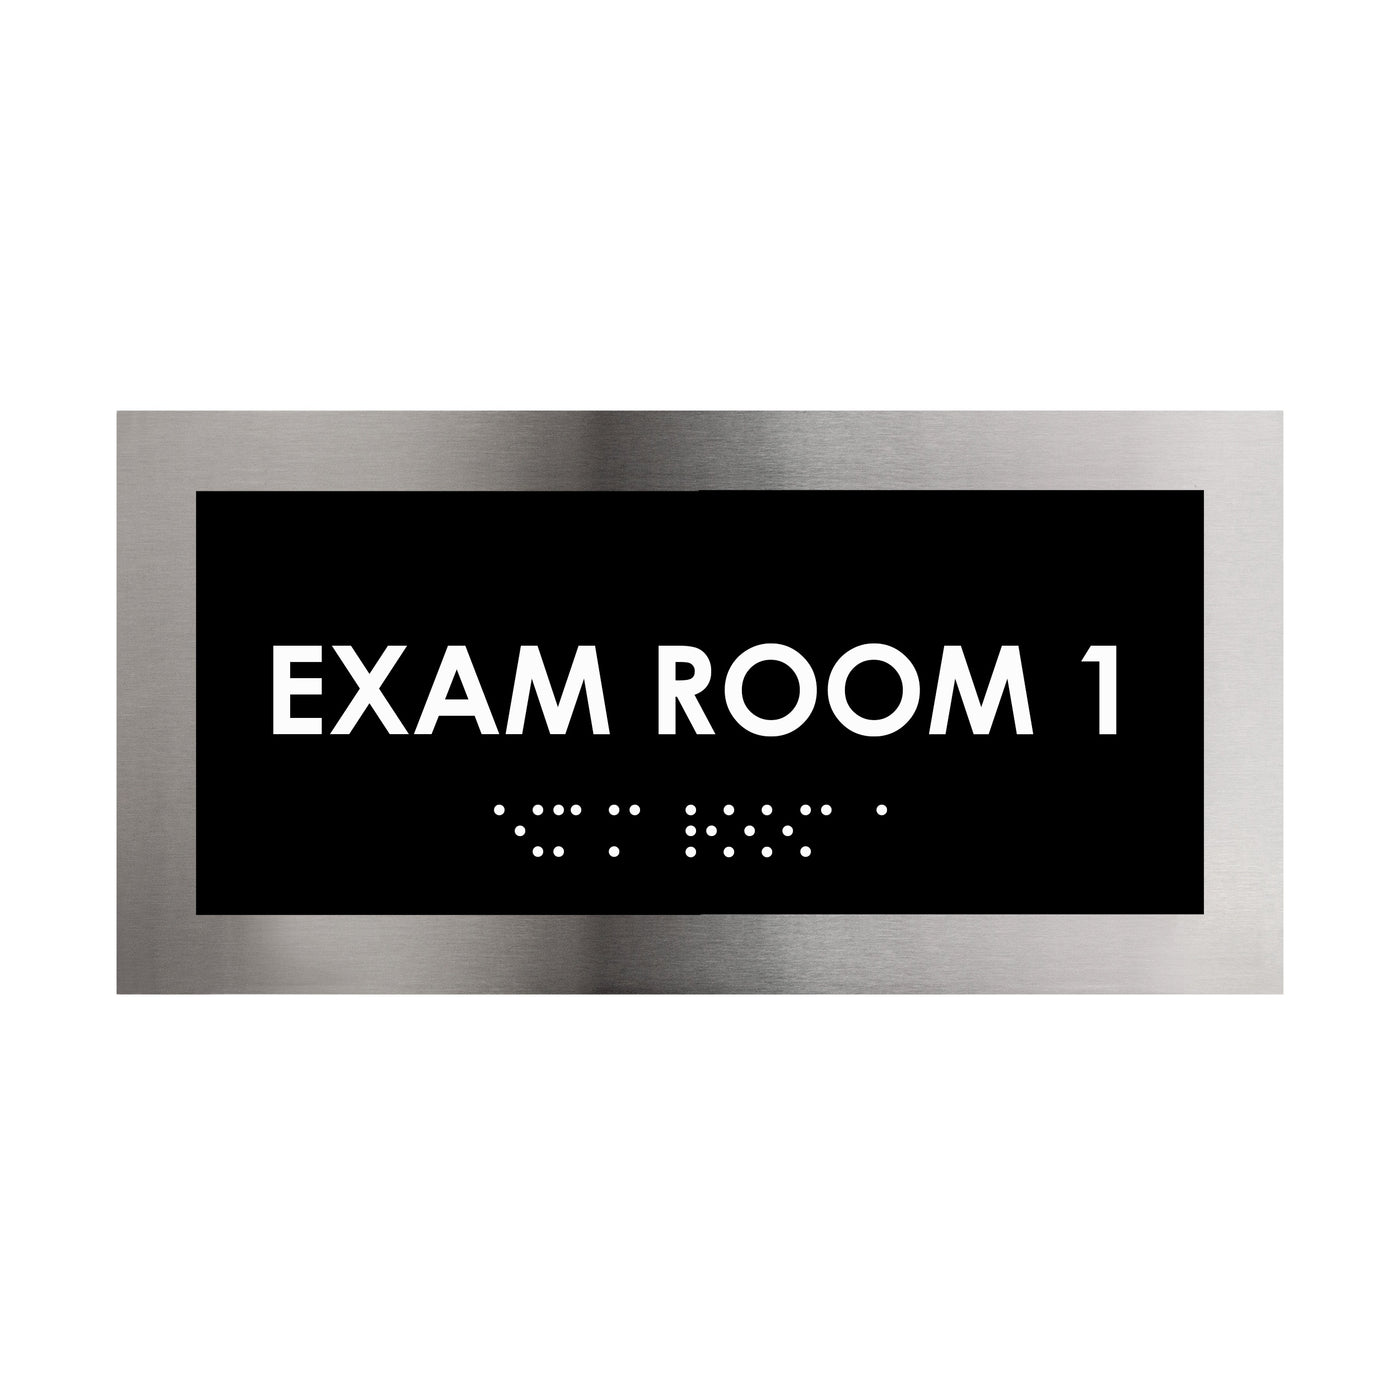 Exam Room Door Plate - Stainless Steel Sign - "Modern" Design